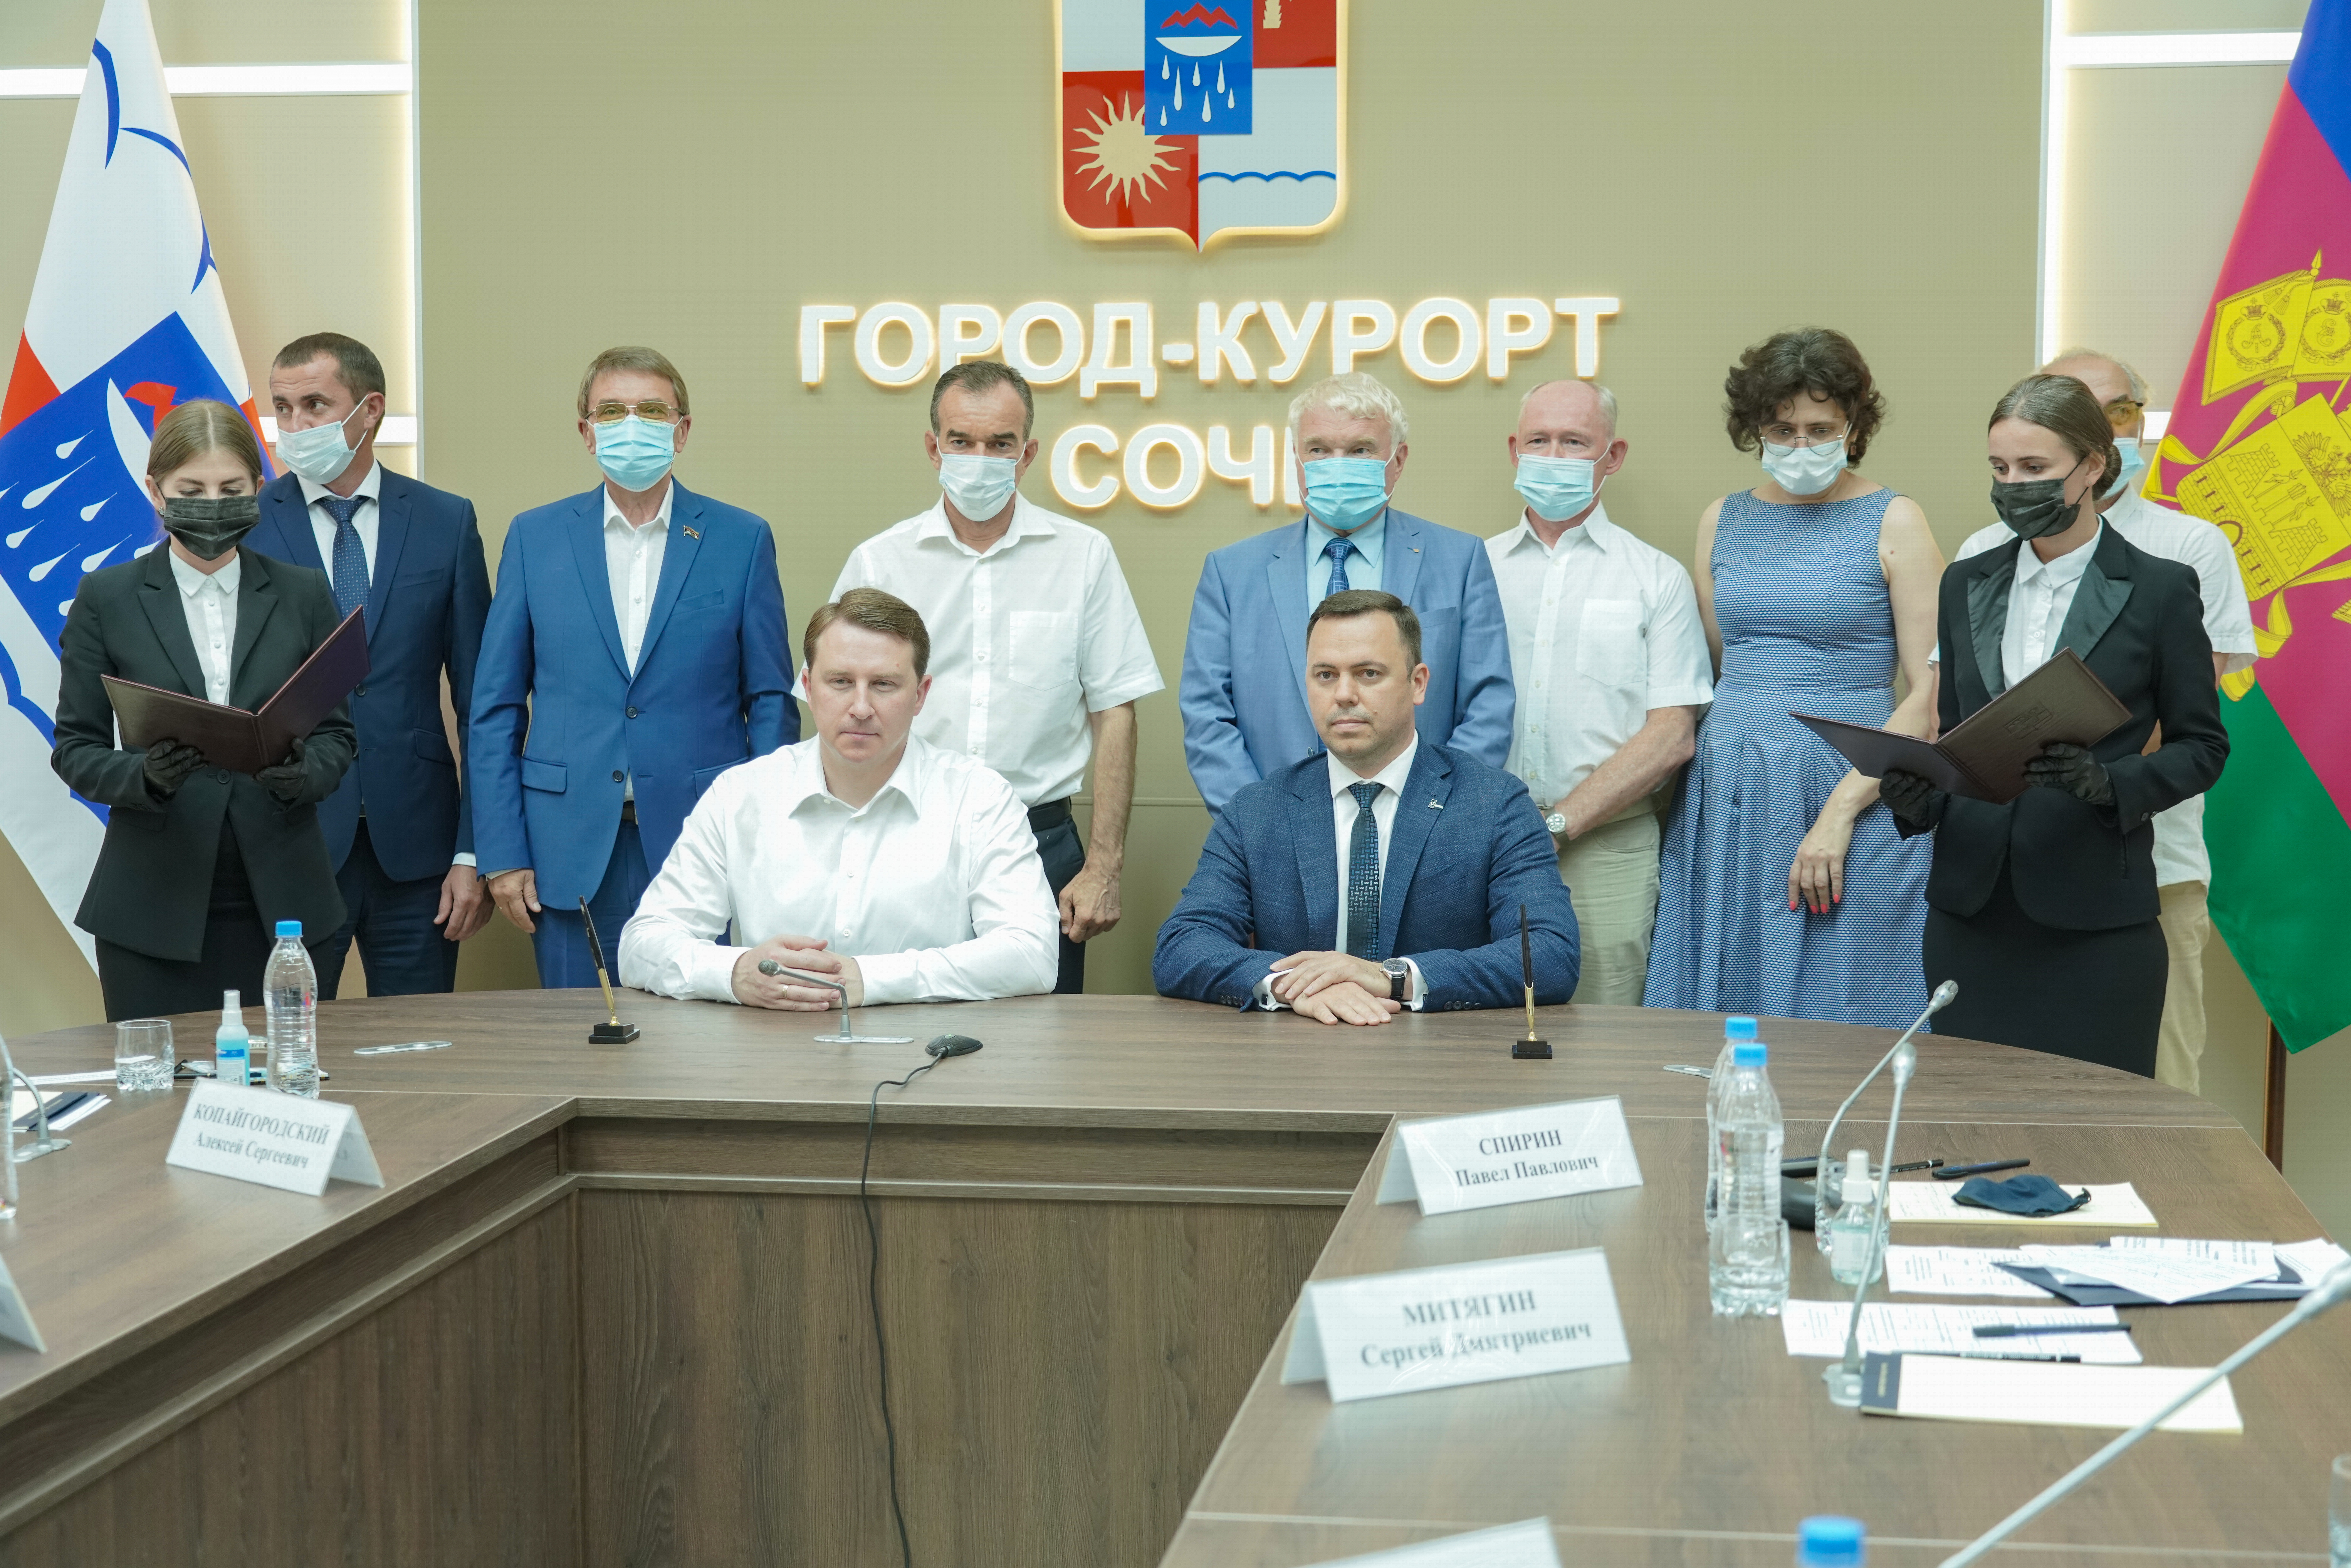 На Градостроительном совете с участием губернатора Кубани Вениамина Кондратьева подписали договор на выполнение работ по подготовке проекта Генплана курорта